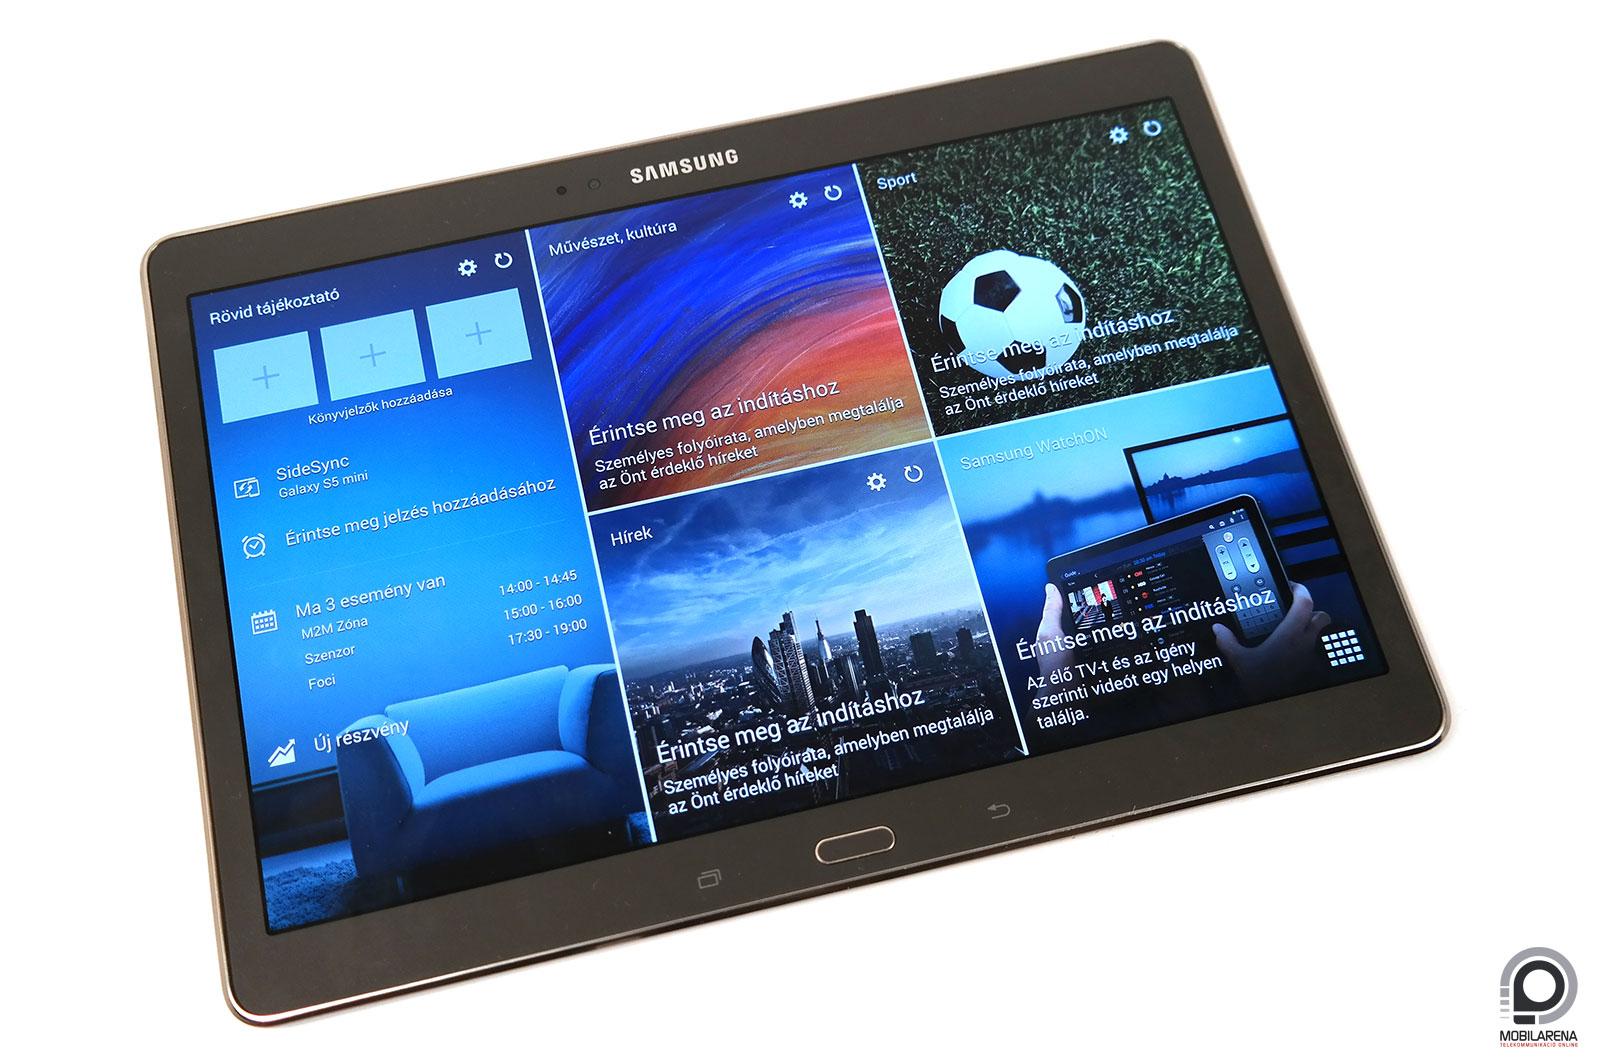 Samsung Galaxy Tab S 10.5 - magas képesítés - Mobilarena Tablet teszt -  Nyomtatóbarát verzió